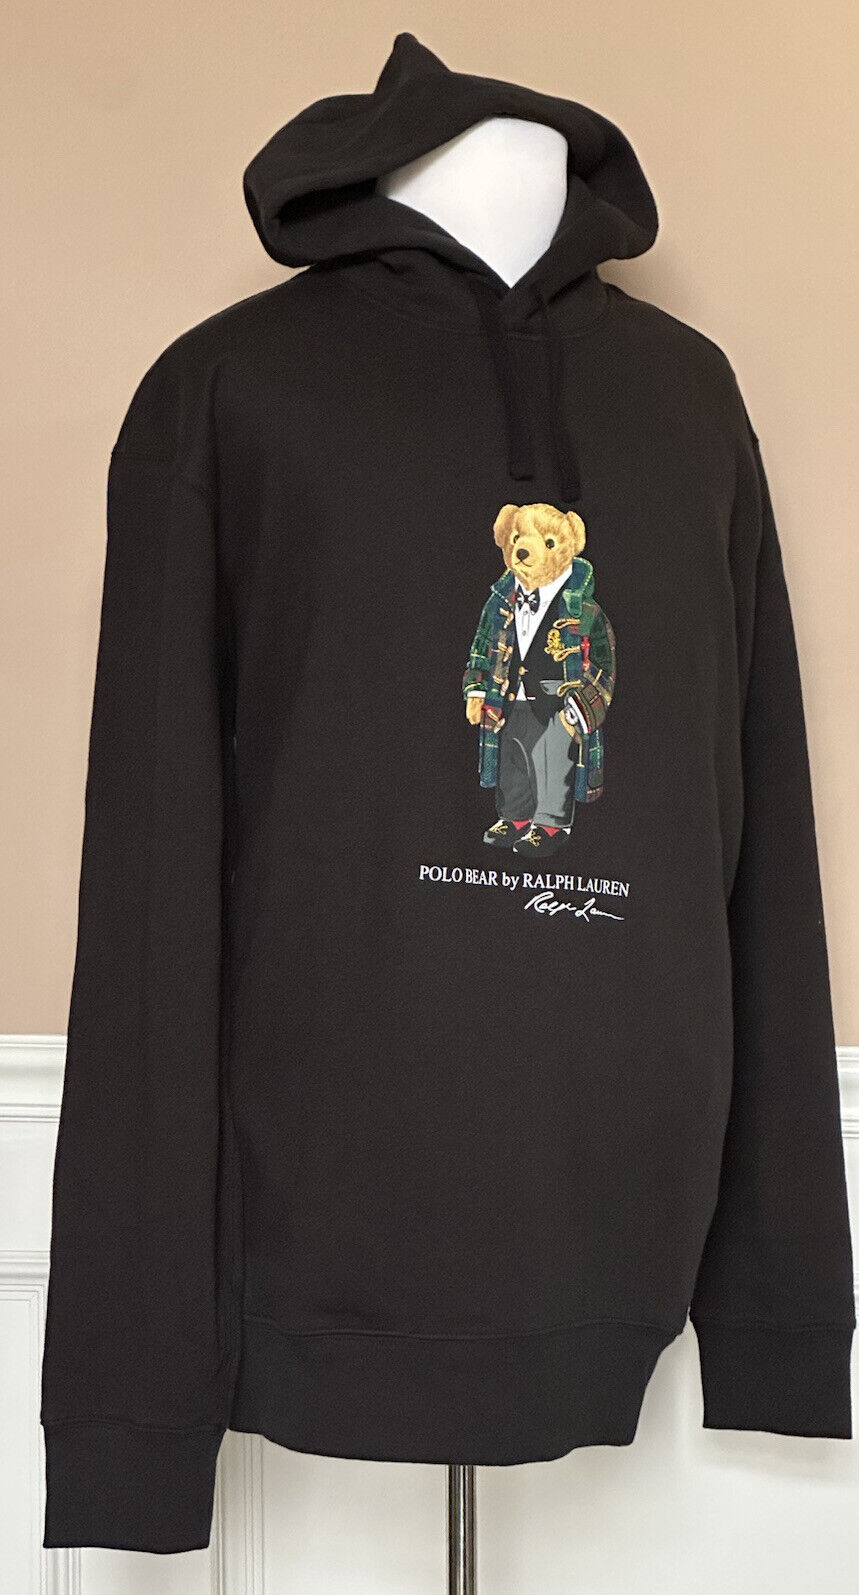 Neu mit Etikett: Polo Ralph Lauren Langarm-Sweatshirt mit Bärenmuster und Kapuzenpullover, Schwarz, XLT/TGL 